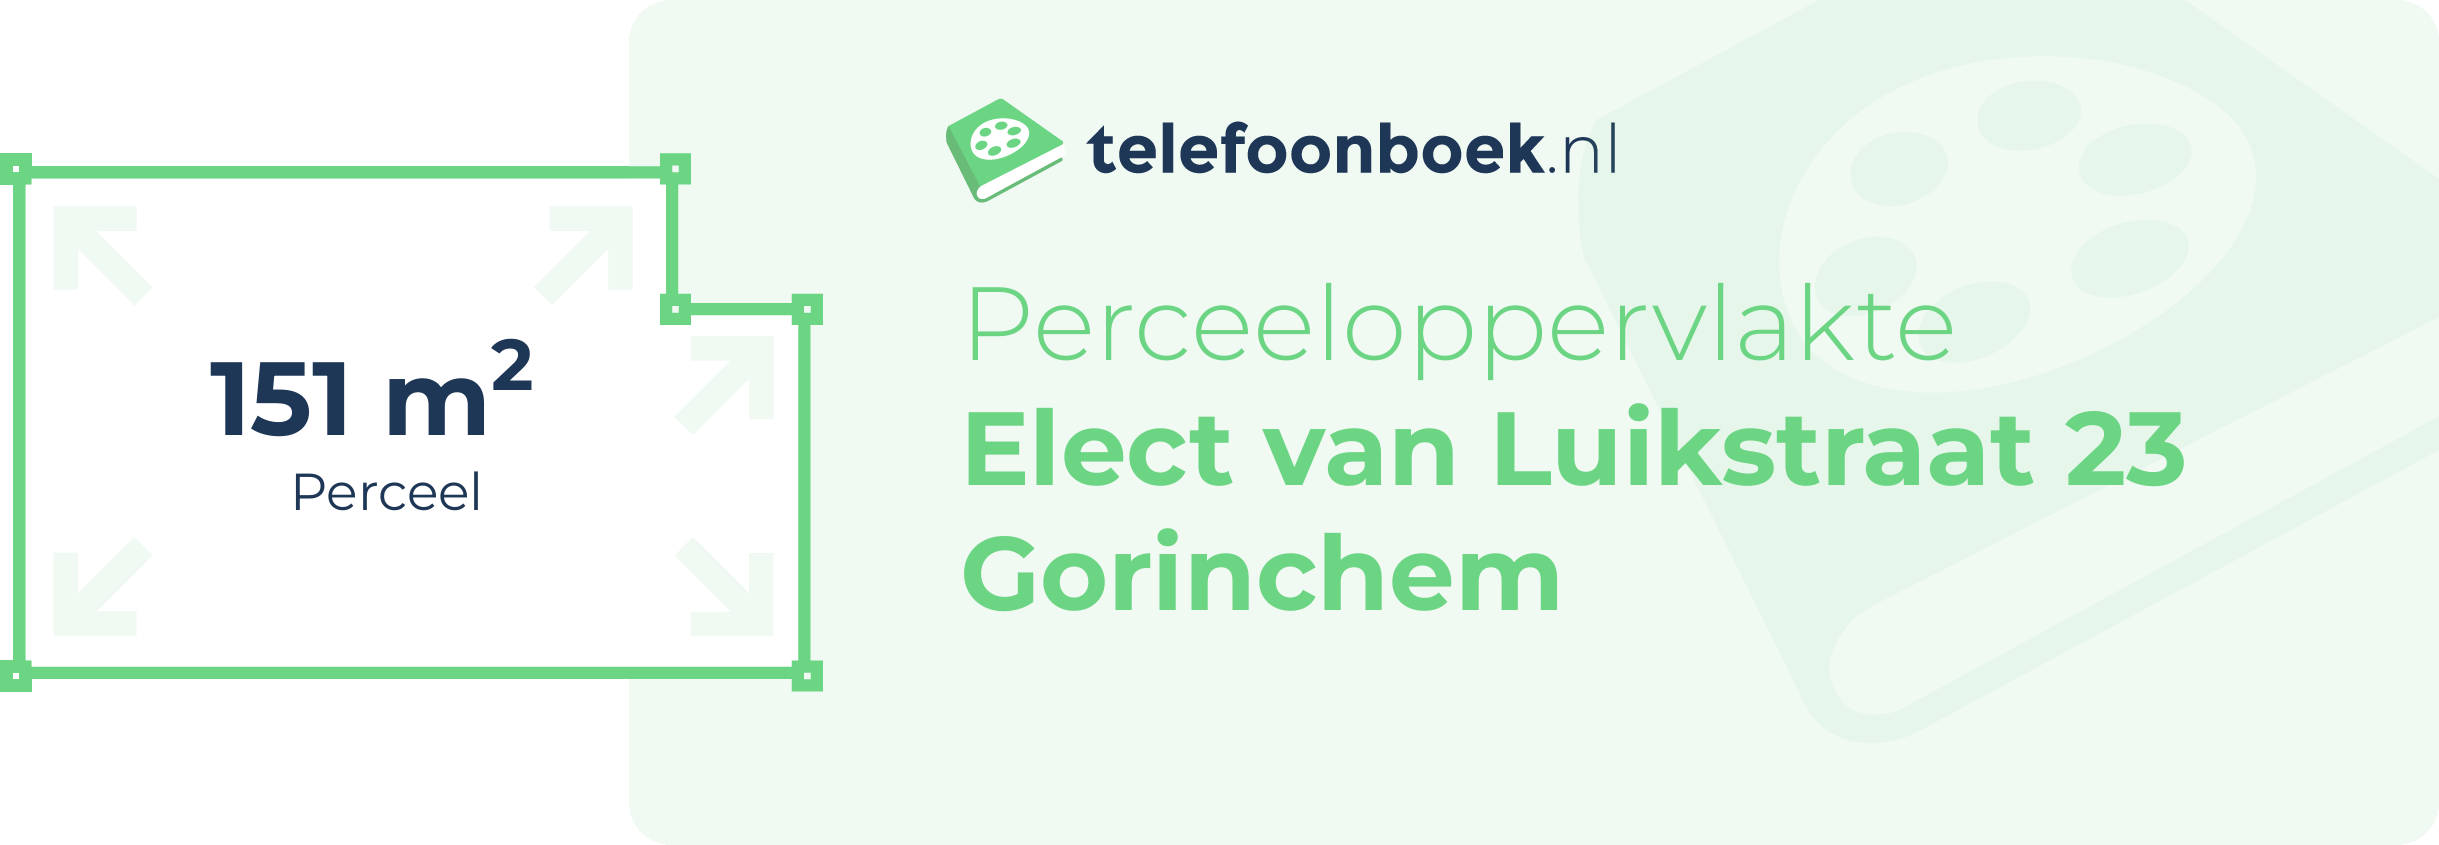 Perceeloppervlakte Elect Van Luikstraat 23 Gorinchem